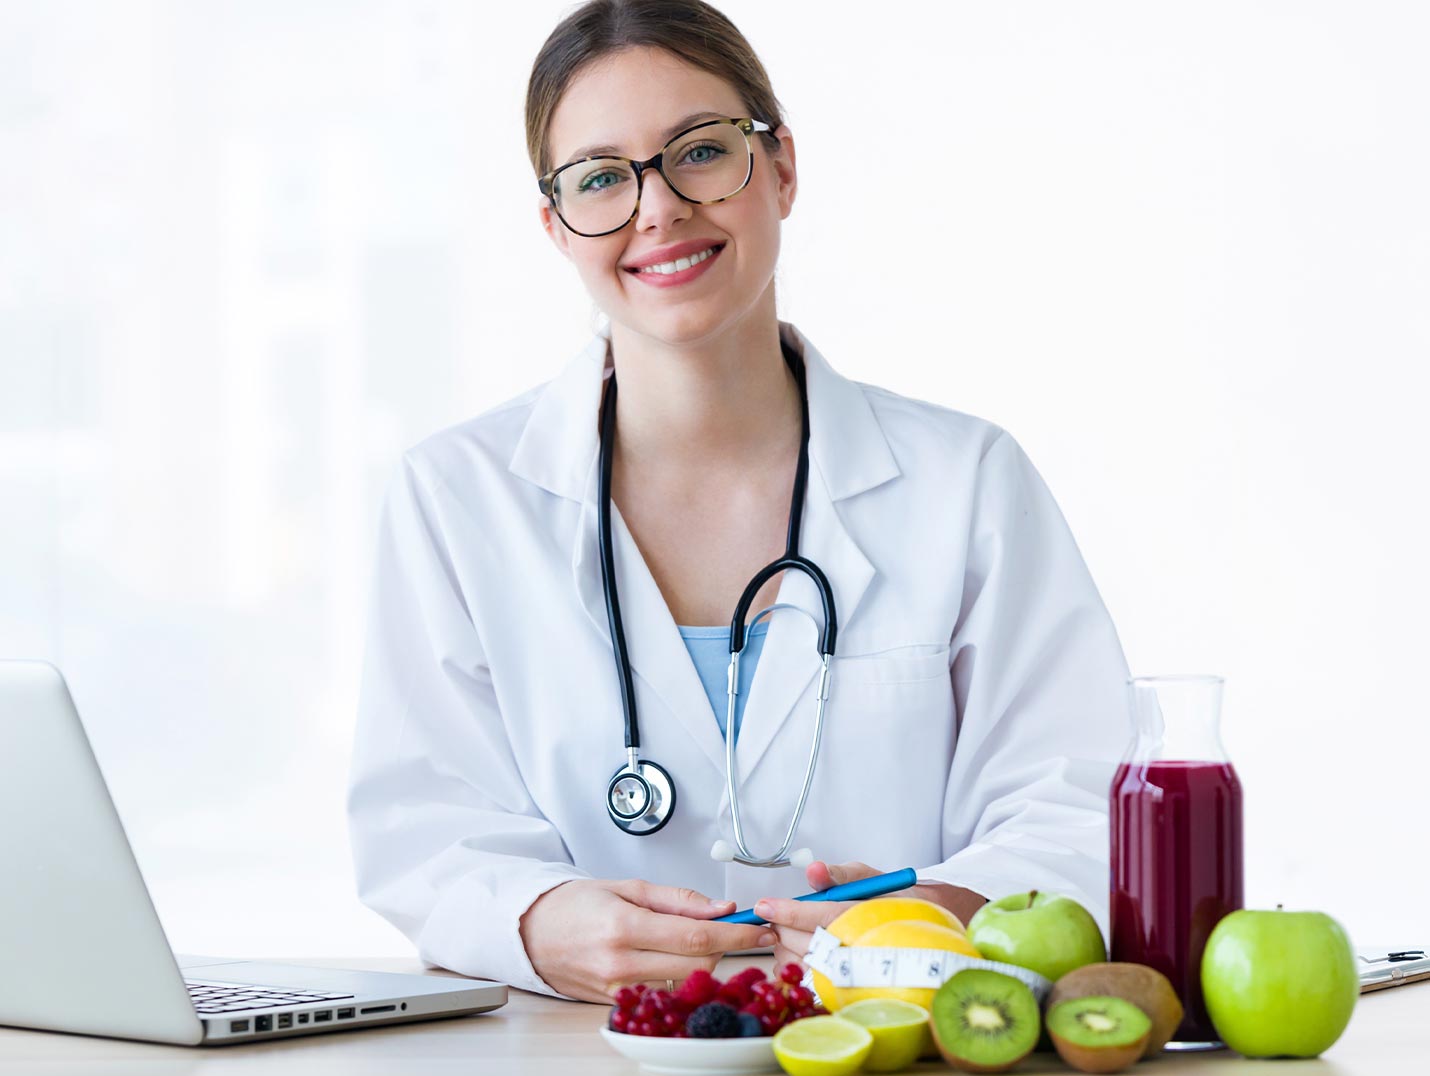 Doctora sonriendo, vestida con una bata blanca. A su lado hay una MacBook, diversas frutas, un jugo y una cinta métrica